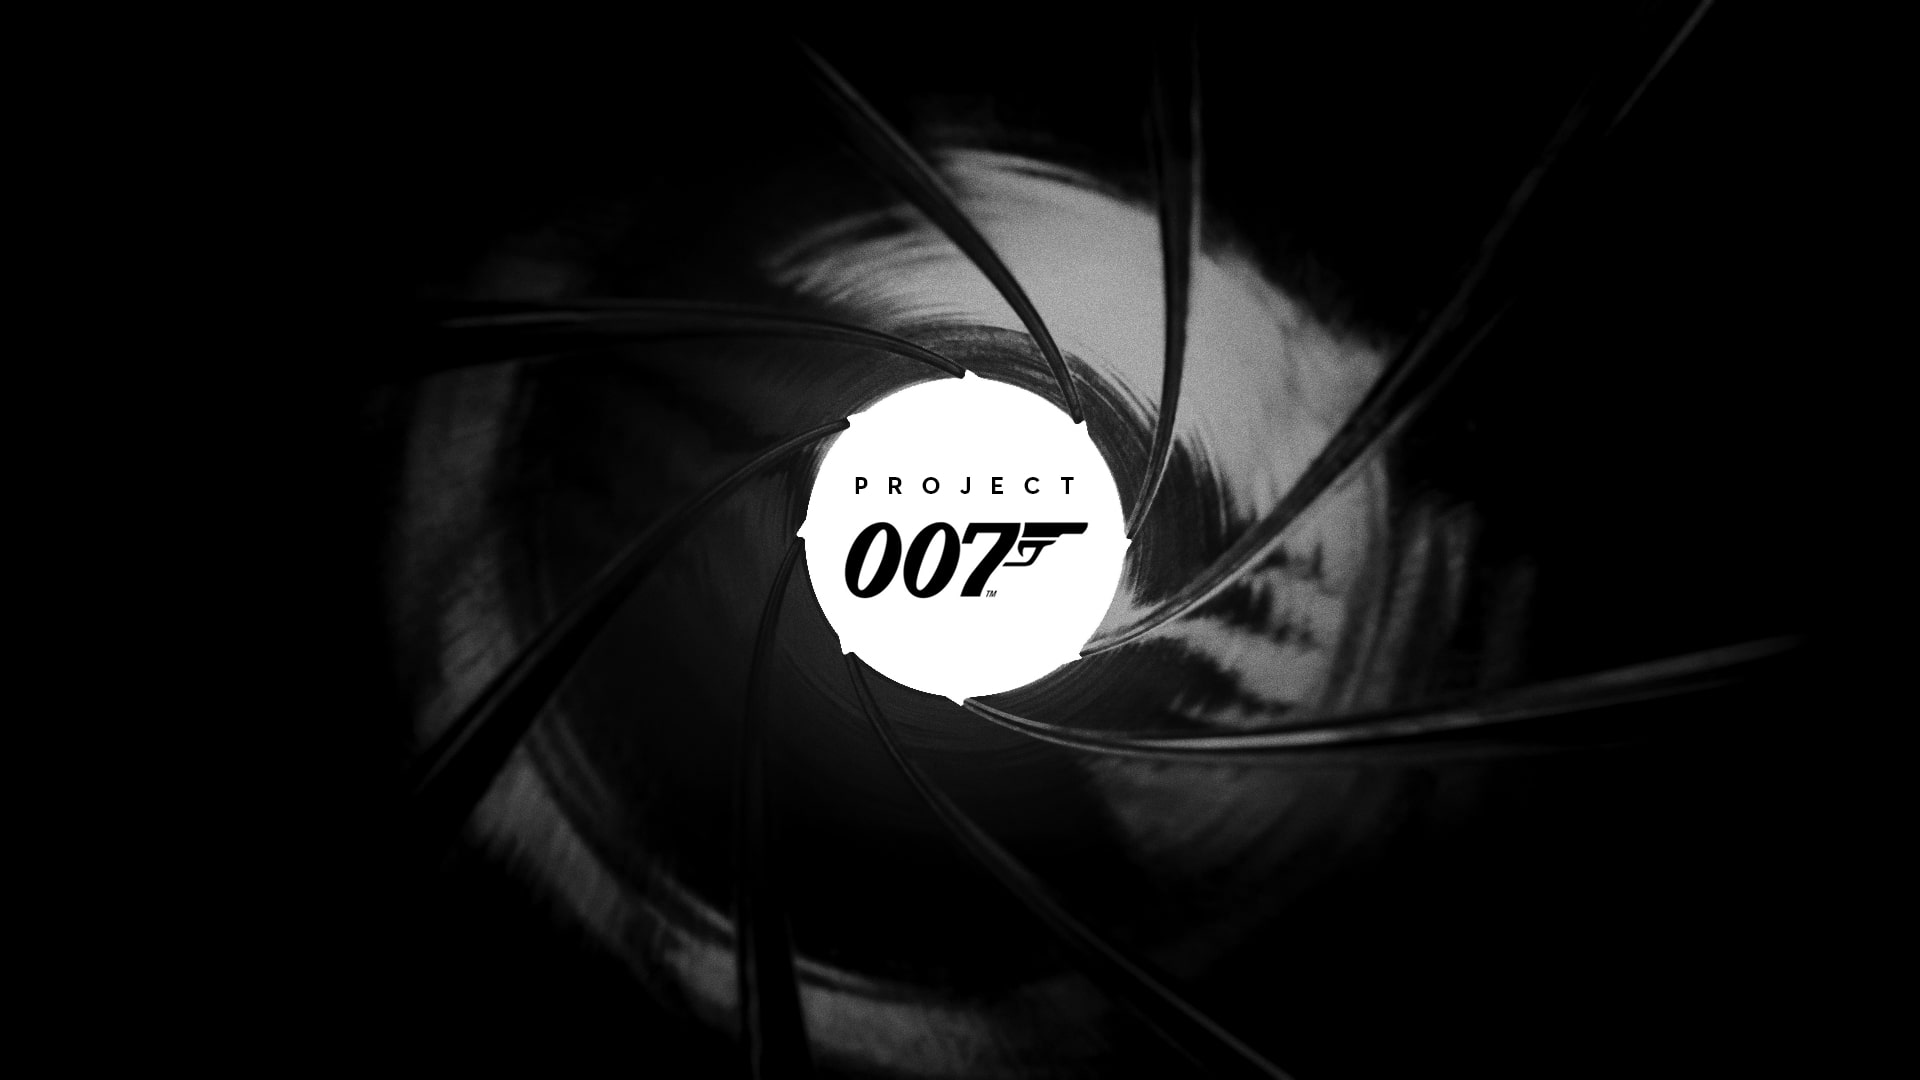 Проект 007: все, что известно на данный момент